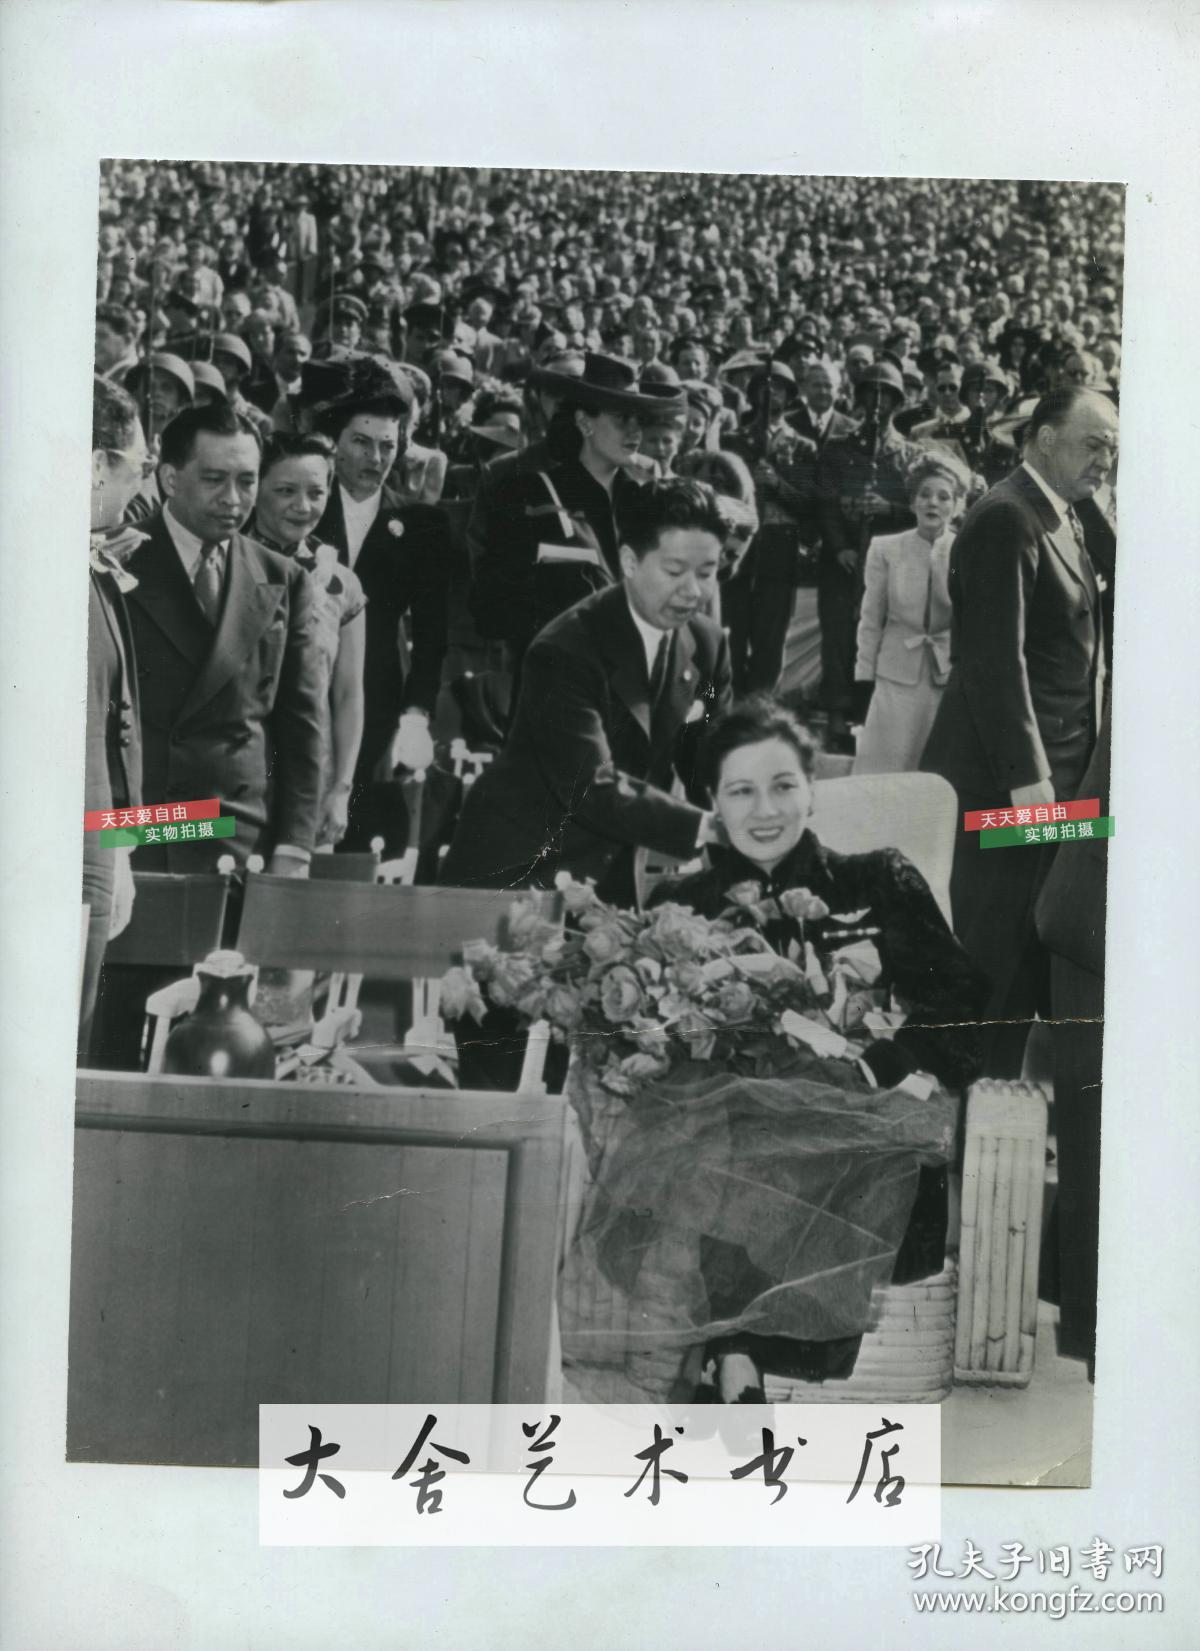 1943年美联社新闻传真照片,蒋介石夫人宋美龄访问美国, 在好莱坞聚集了3万人来聆听她的讲演老照片，23.4X18.4厘米